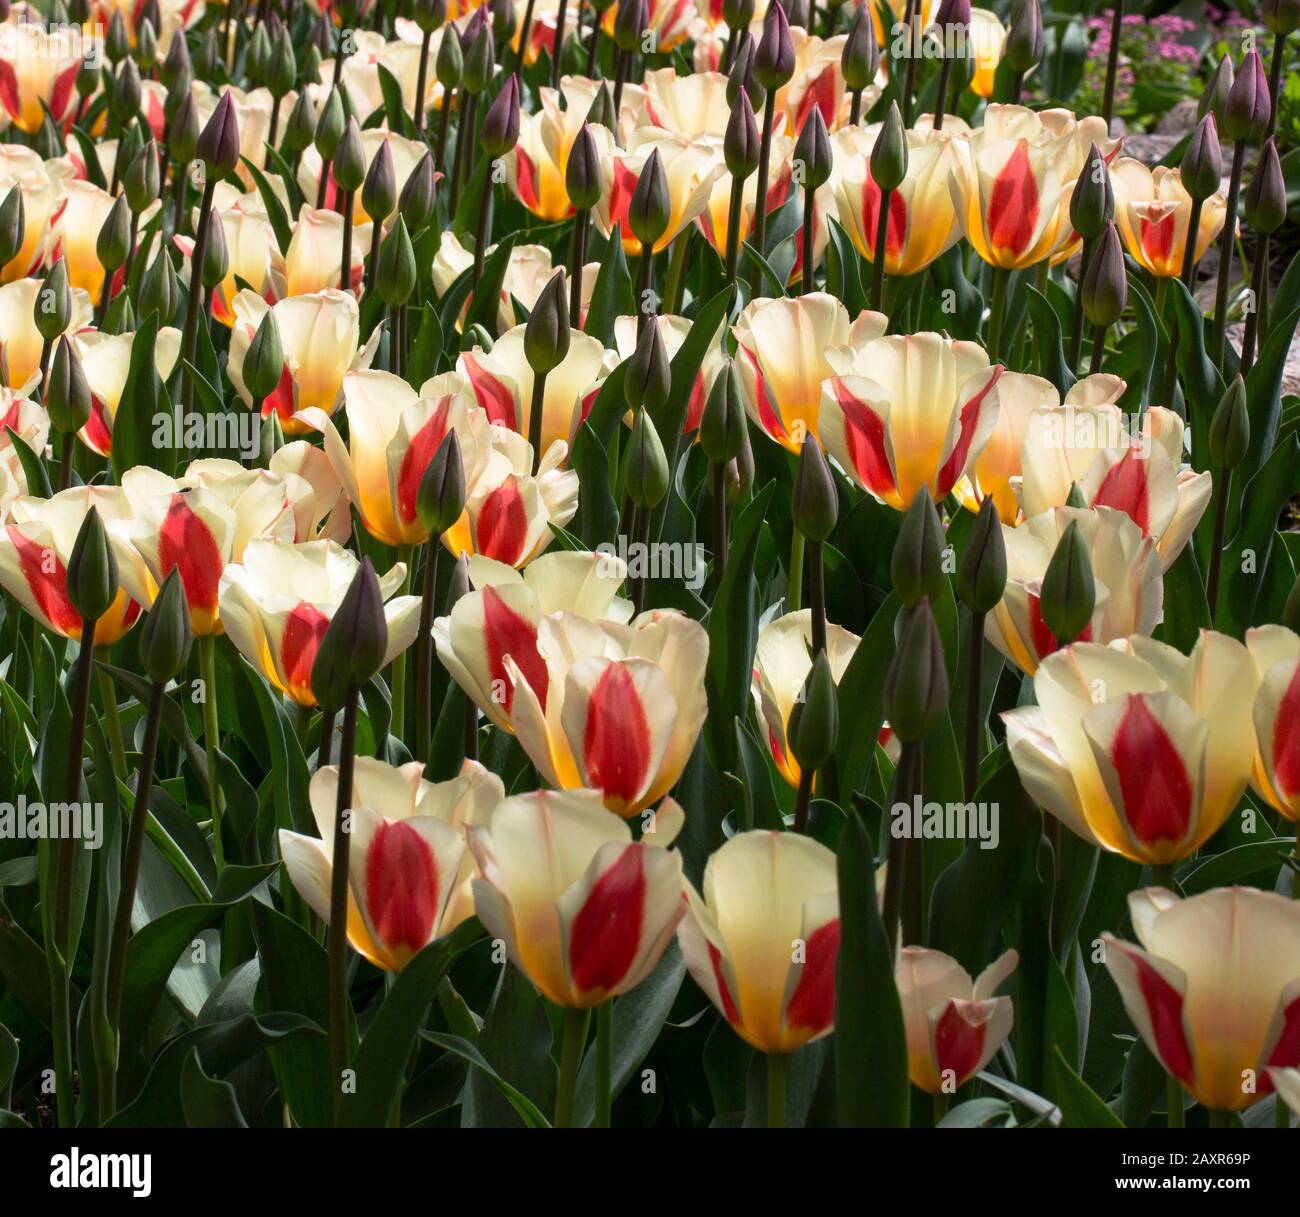 Lit de tulipes jaunes et rouges Banque D'Images